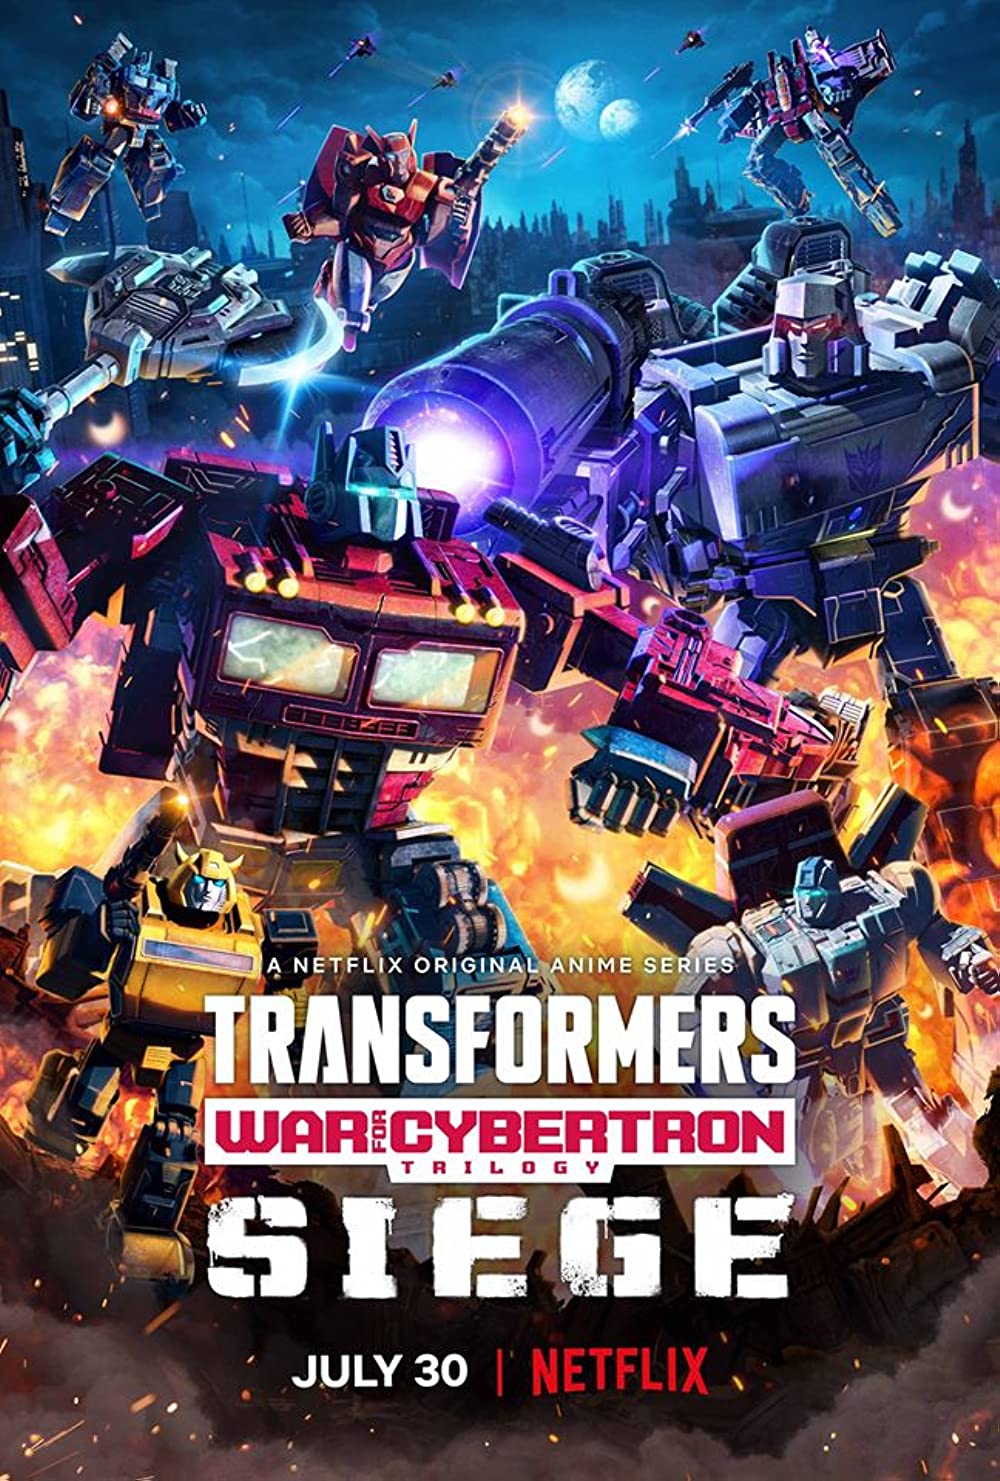 Filmbeschreibung zu Transformers: War for Cybertron